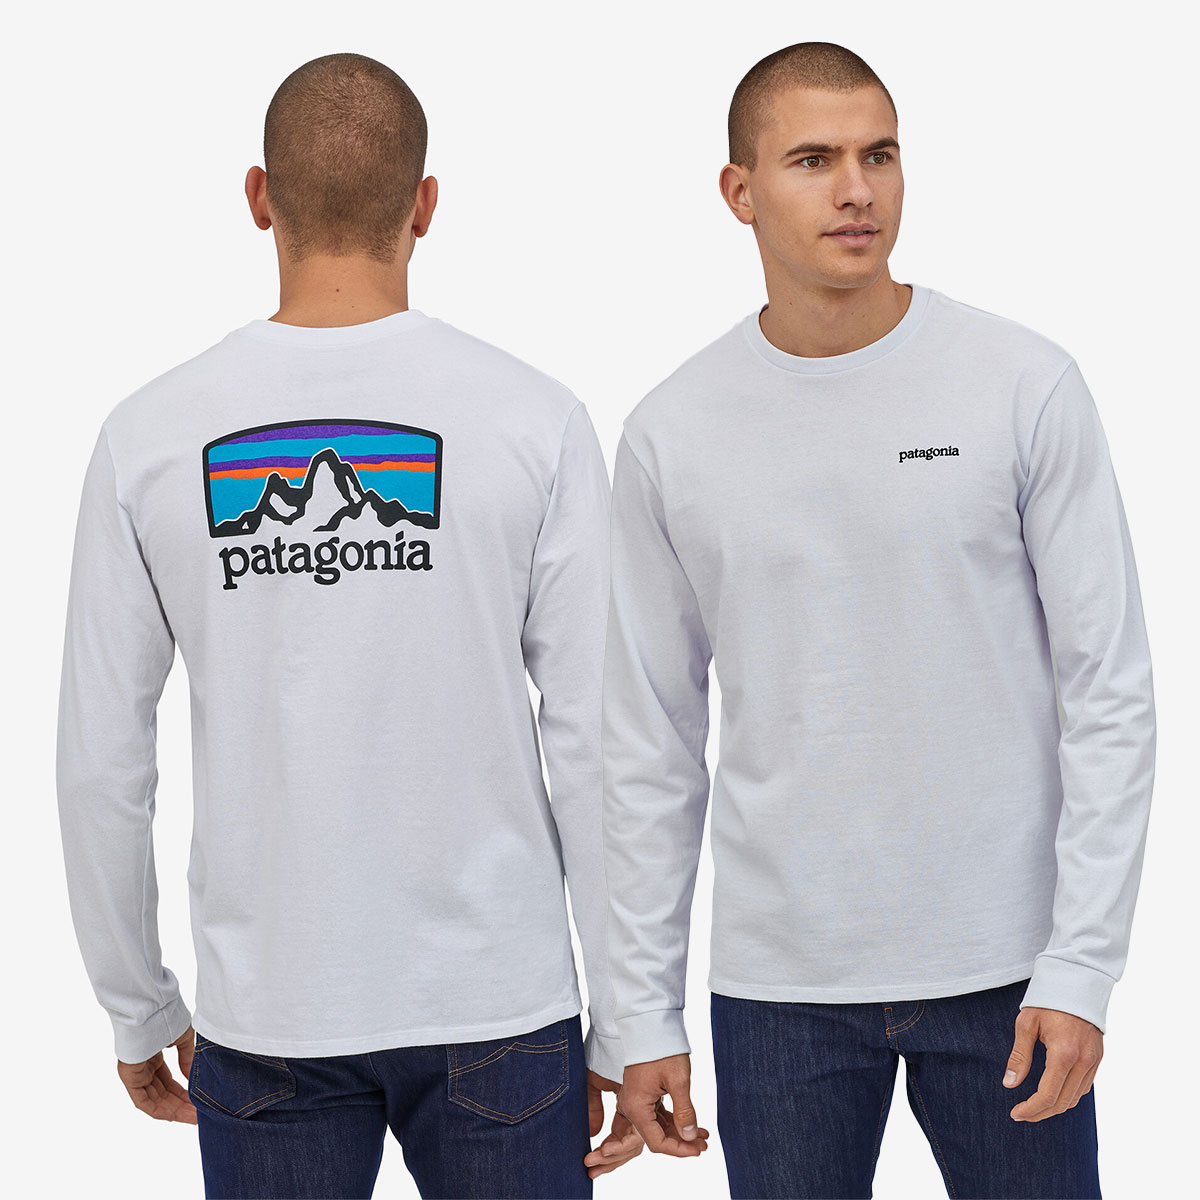 Patagonia パタゴニア ロンT 長袖 Tシャツ トップス メンズ 定番 